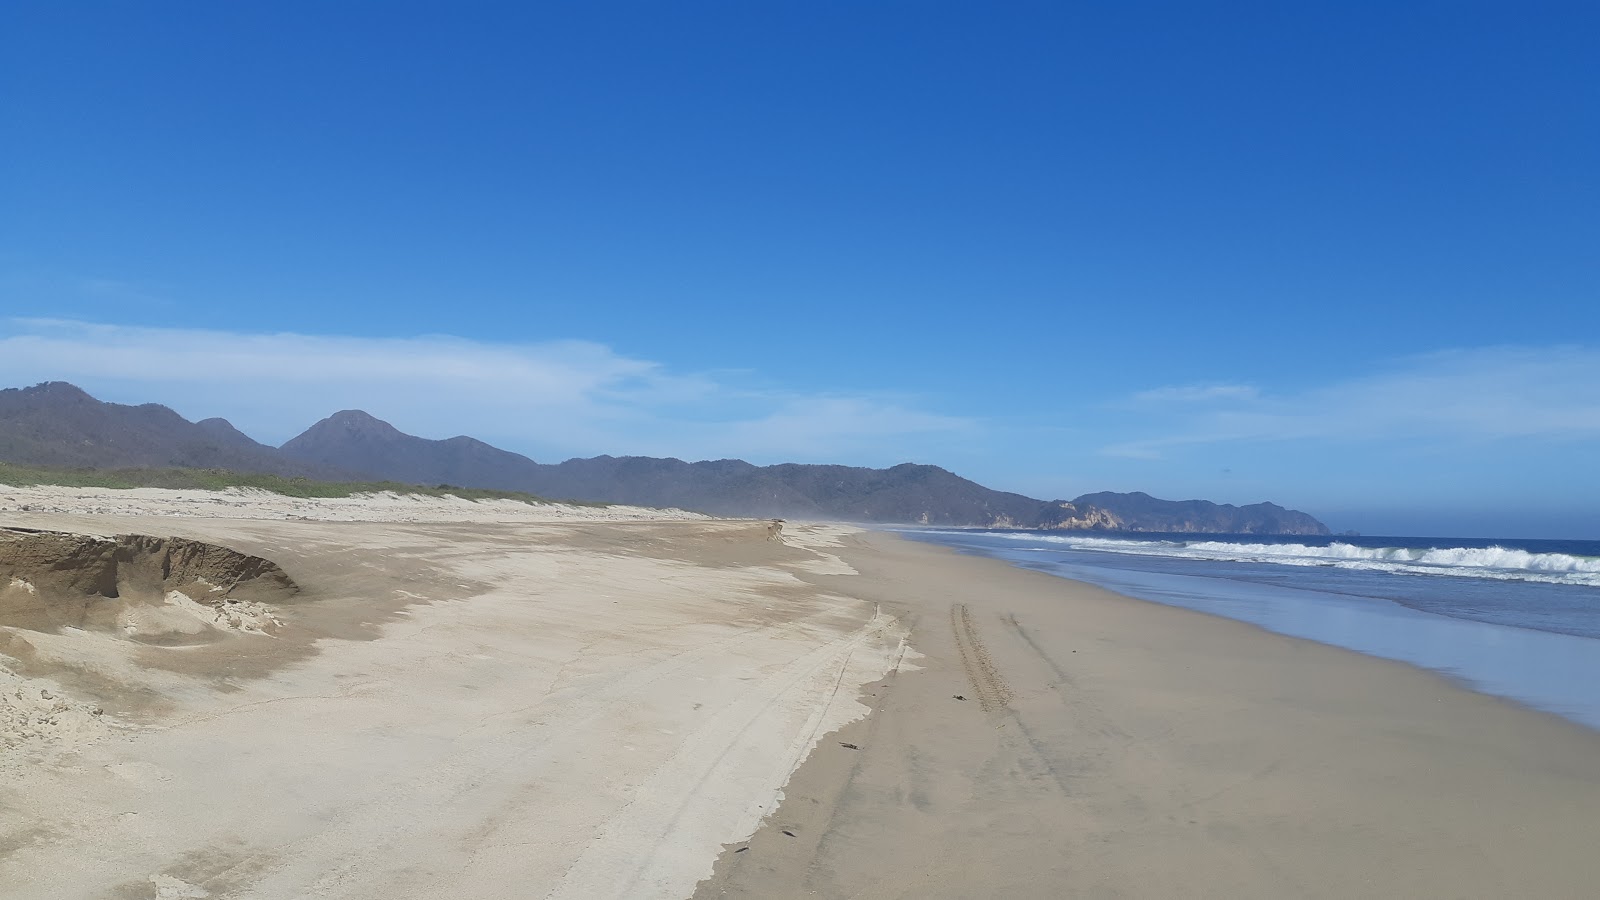 Playa Pena Blanca'in fotoğrafı kahverengi kum yüzey ile